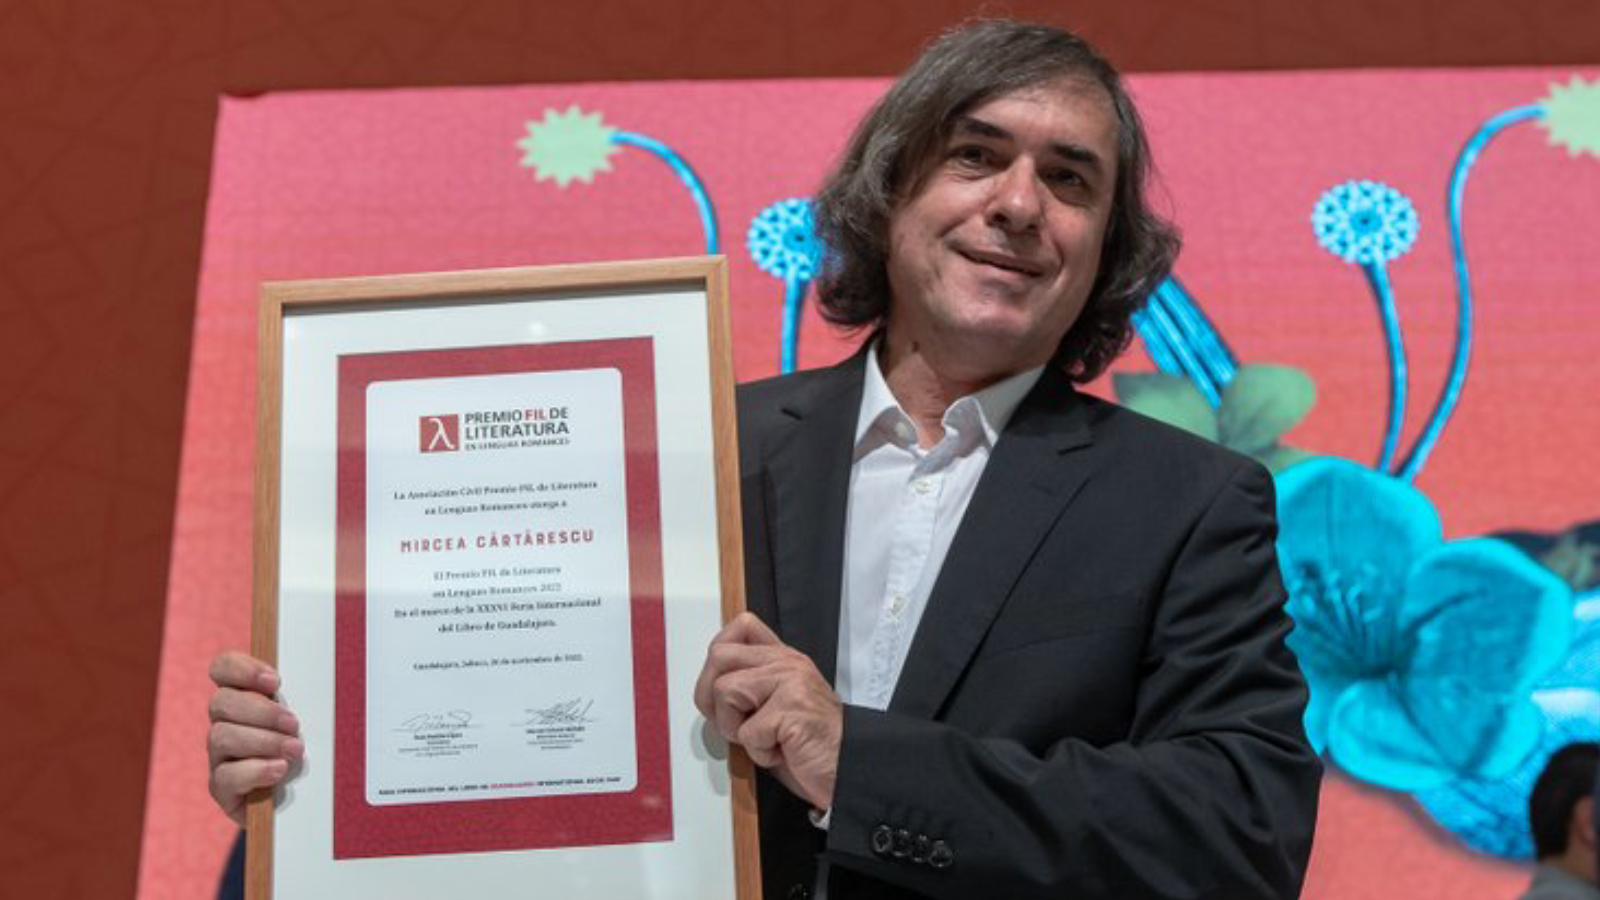 Mircea Cărtărescu fue galardonado en la FIL Guadalajara 2022: “La poesía es otro nombre para la libertad”